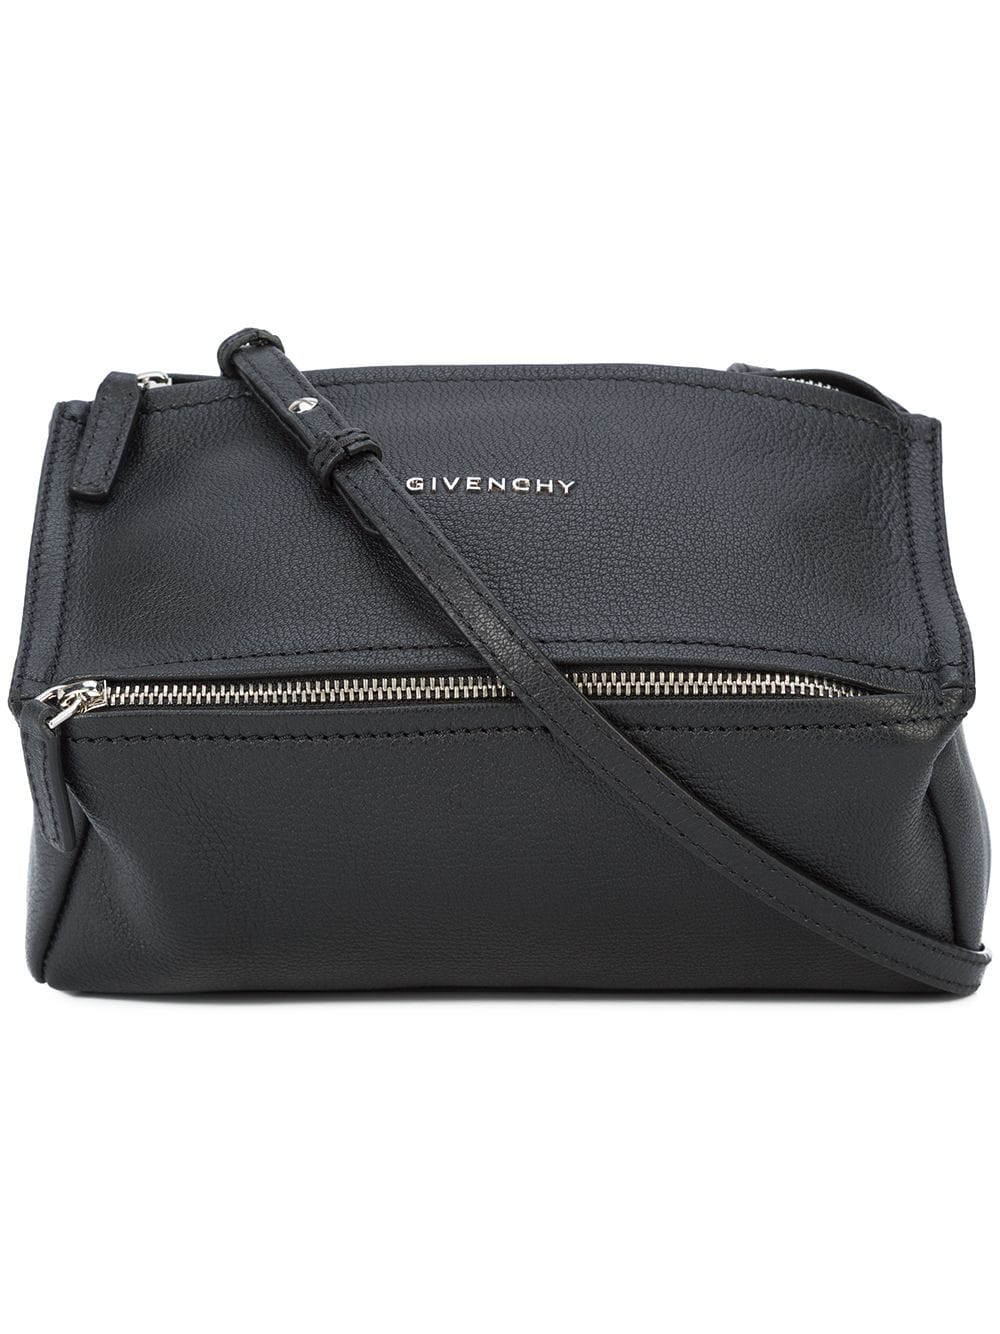 фото Givenchy сумка-тоут 'Pandora'